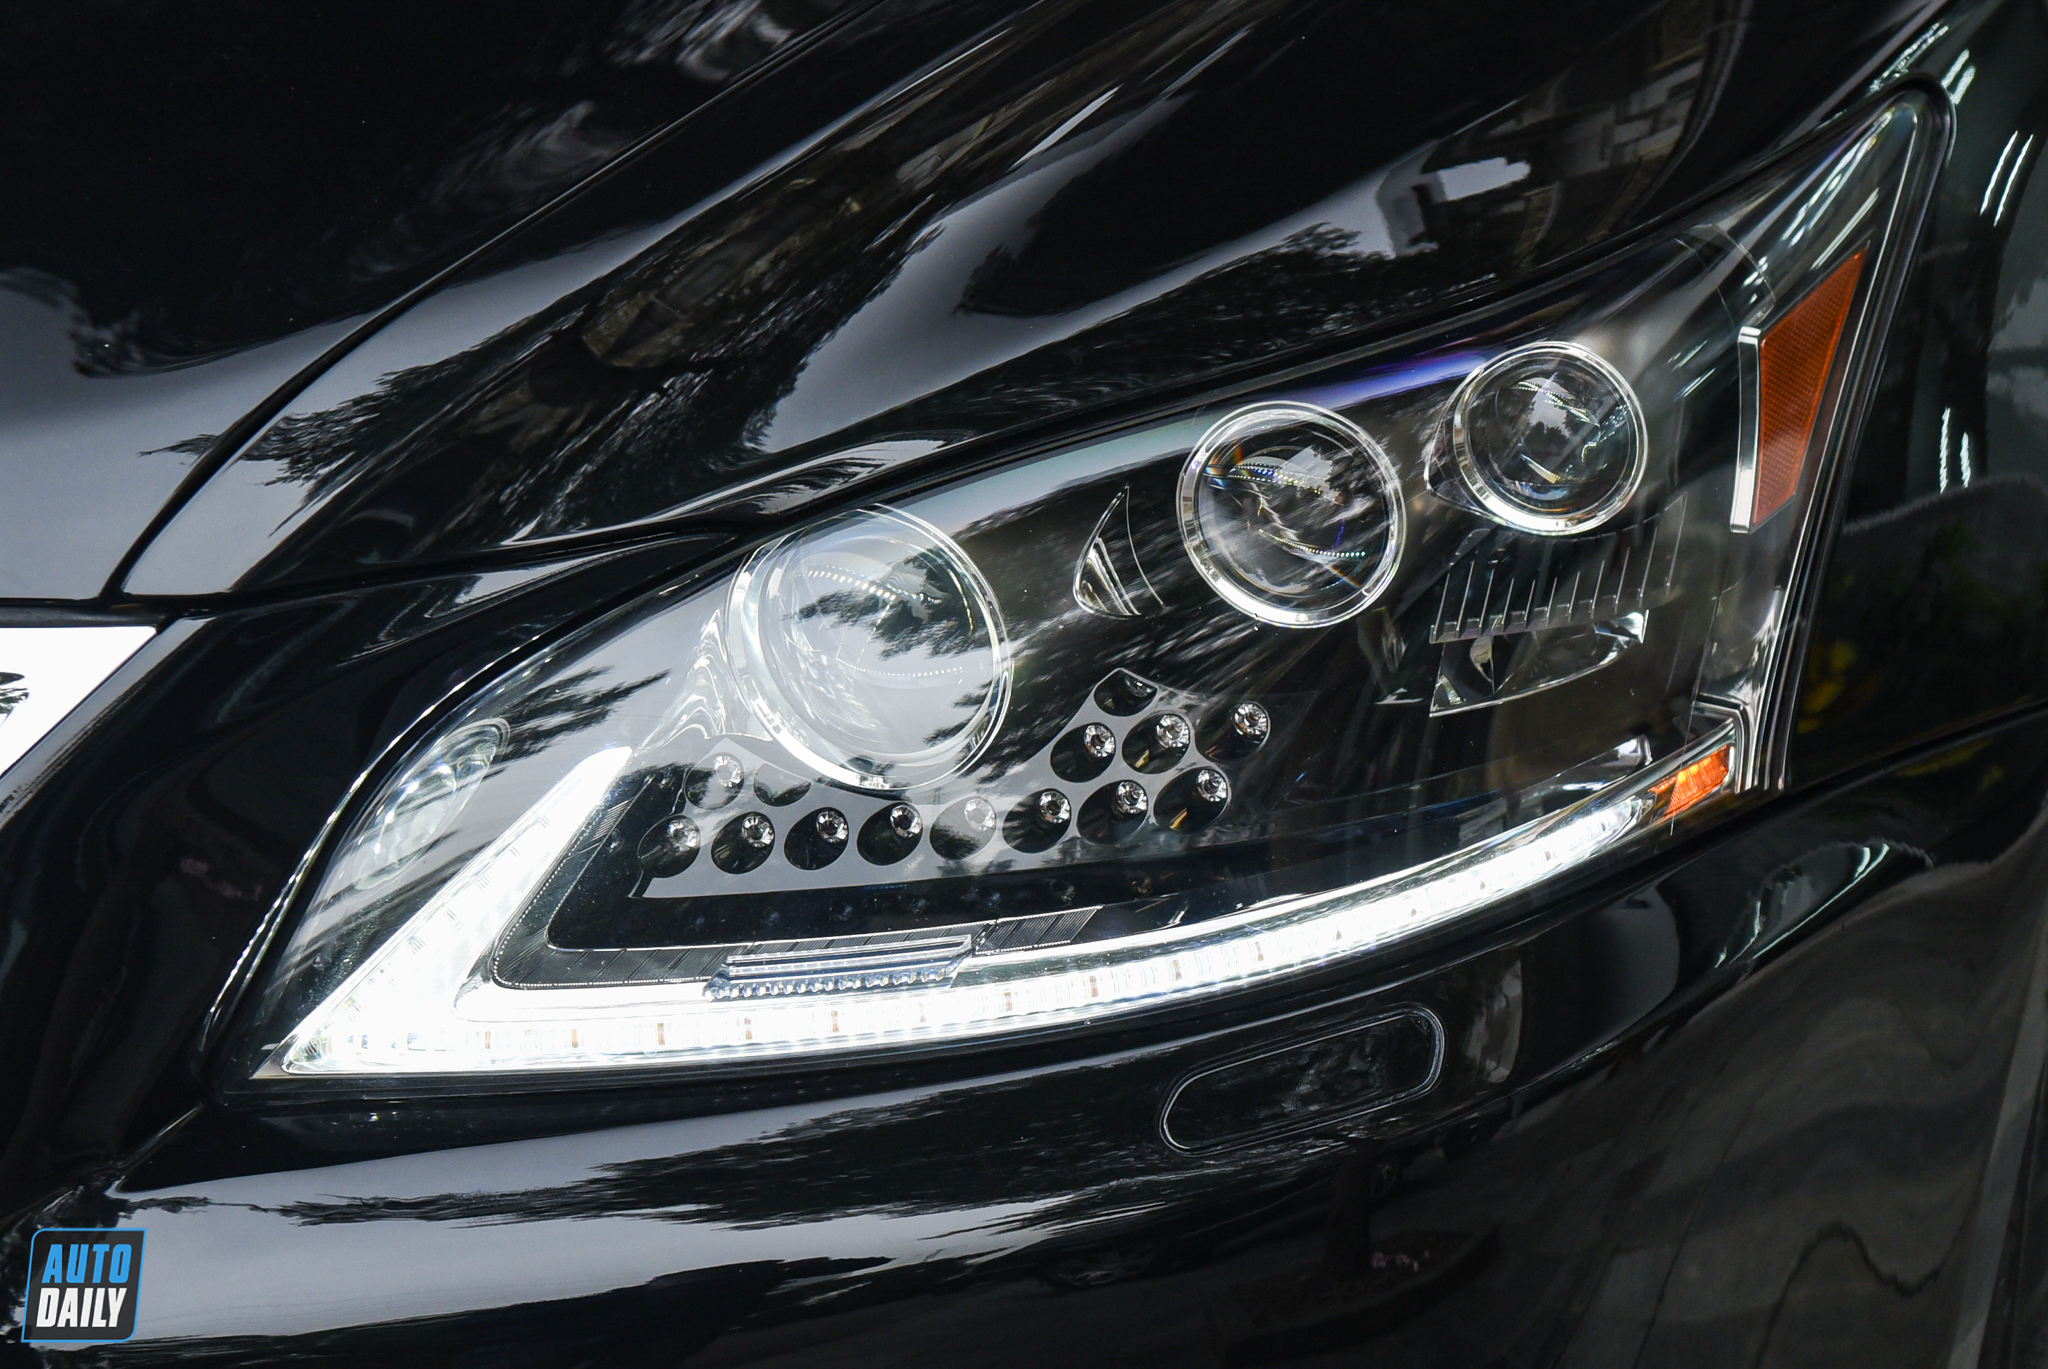 Lexus LS460L 2013 biển đẹp chào bán lại hơn 3 tỷ đồng adt-7722.jpg